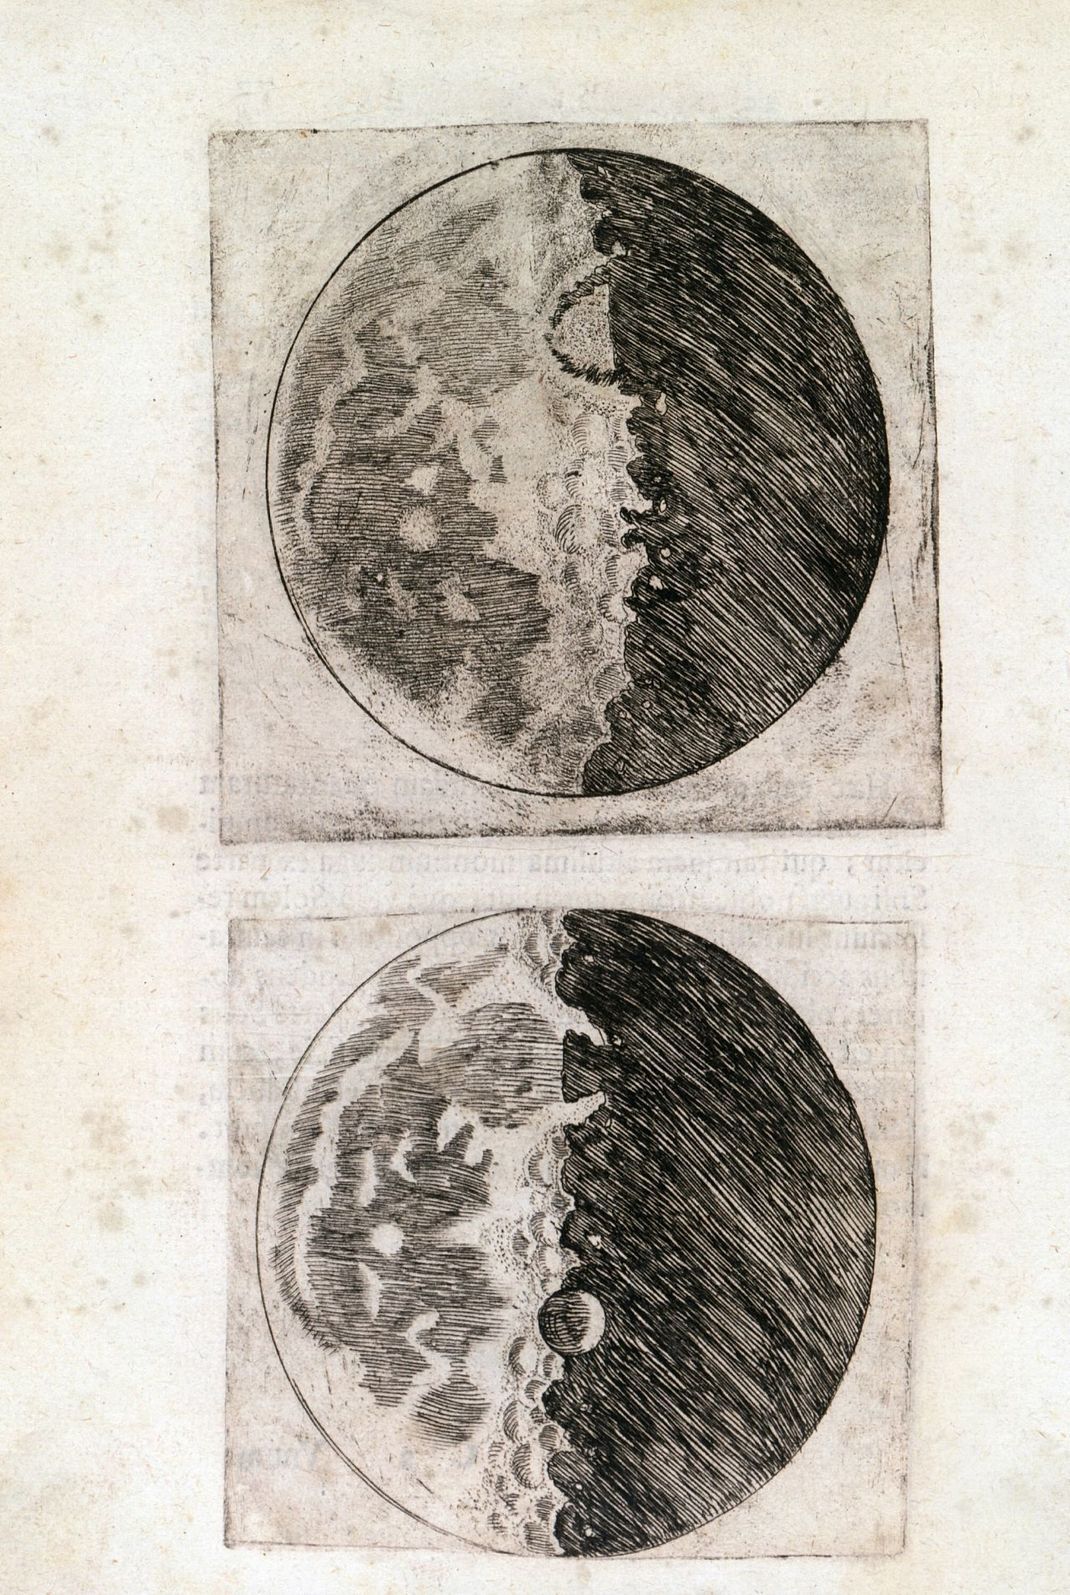 Federzeichnung vom Mond aus dem Buch "Sidereus Nuncius" von Galileo Galilei. 